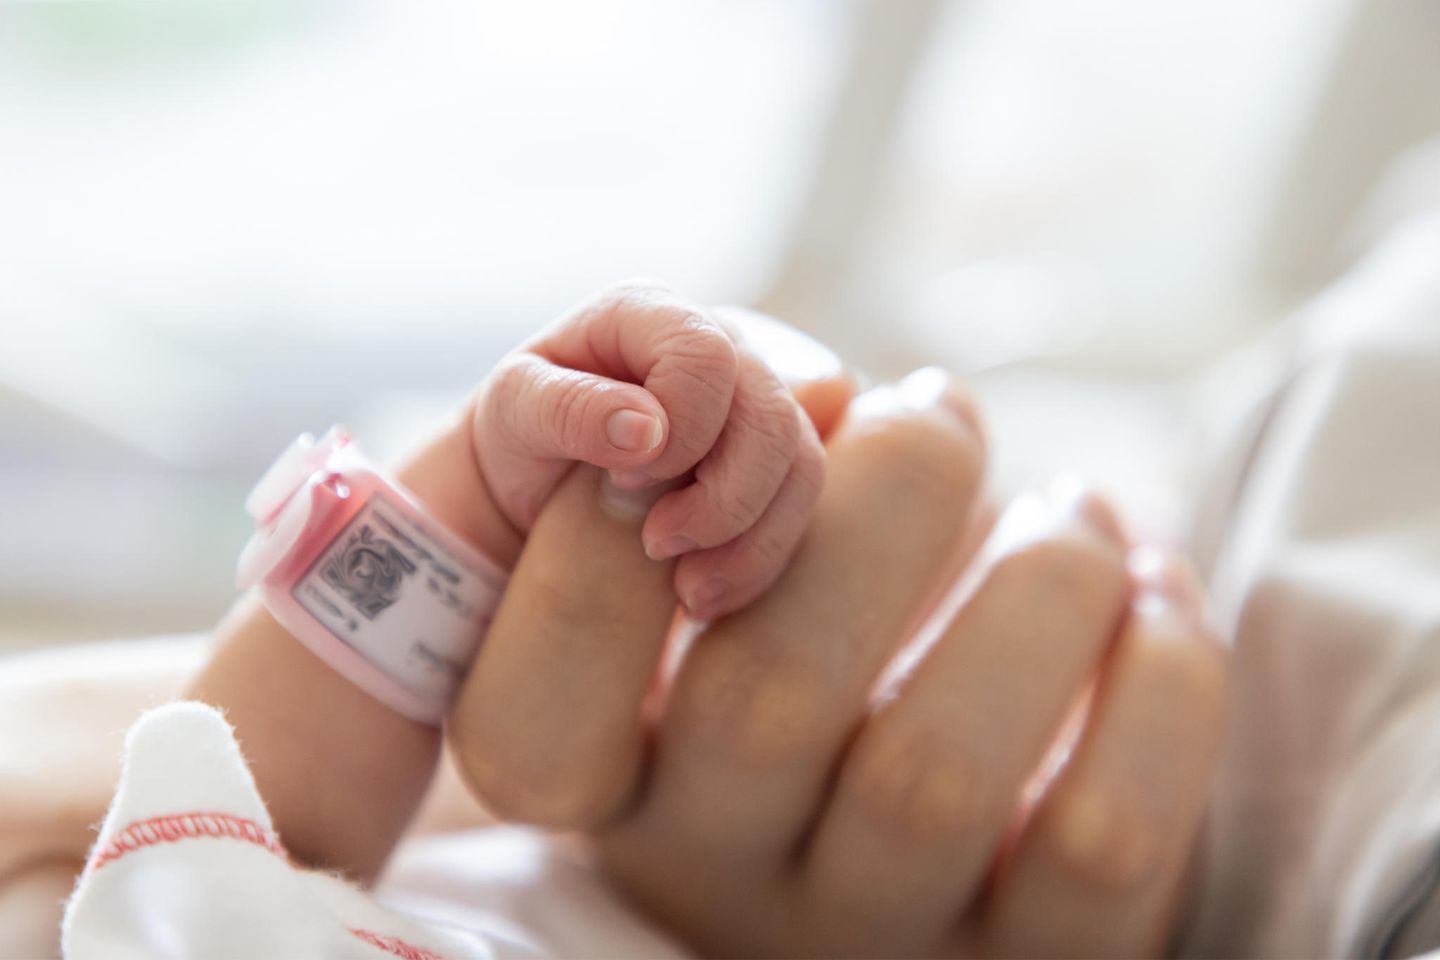 Und dann kamst du: Eine Hand hält die kleine Hand eines neugeborenen Babys